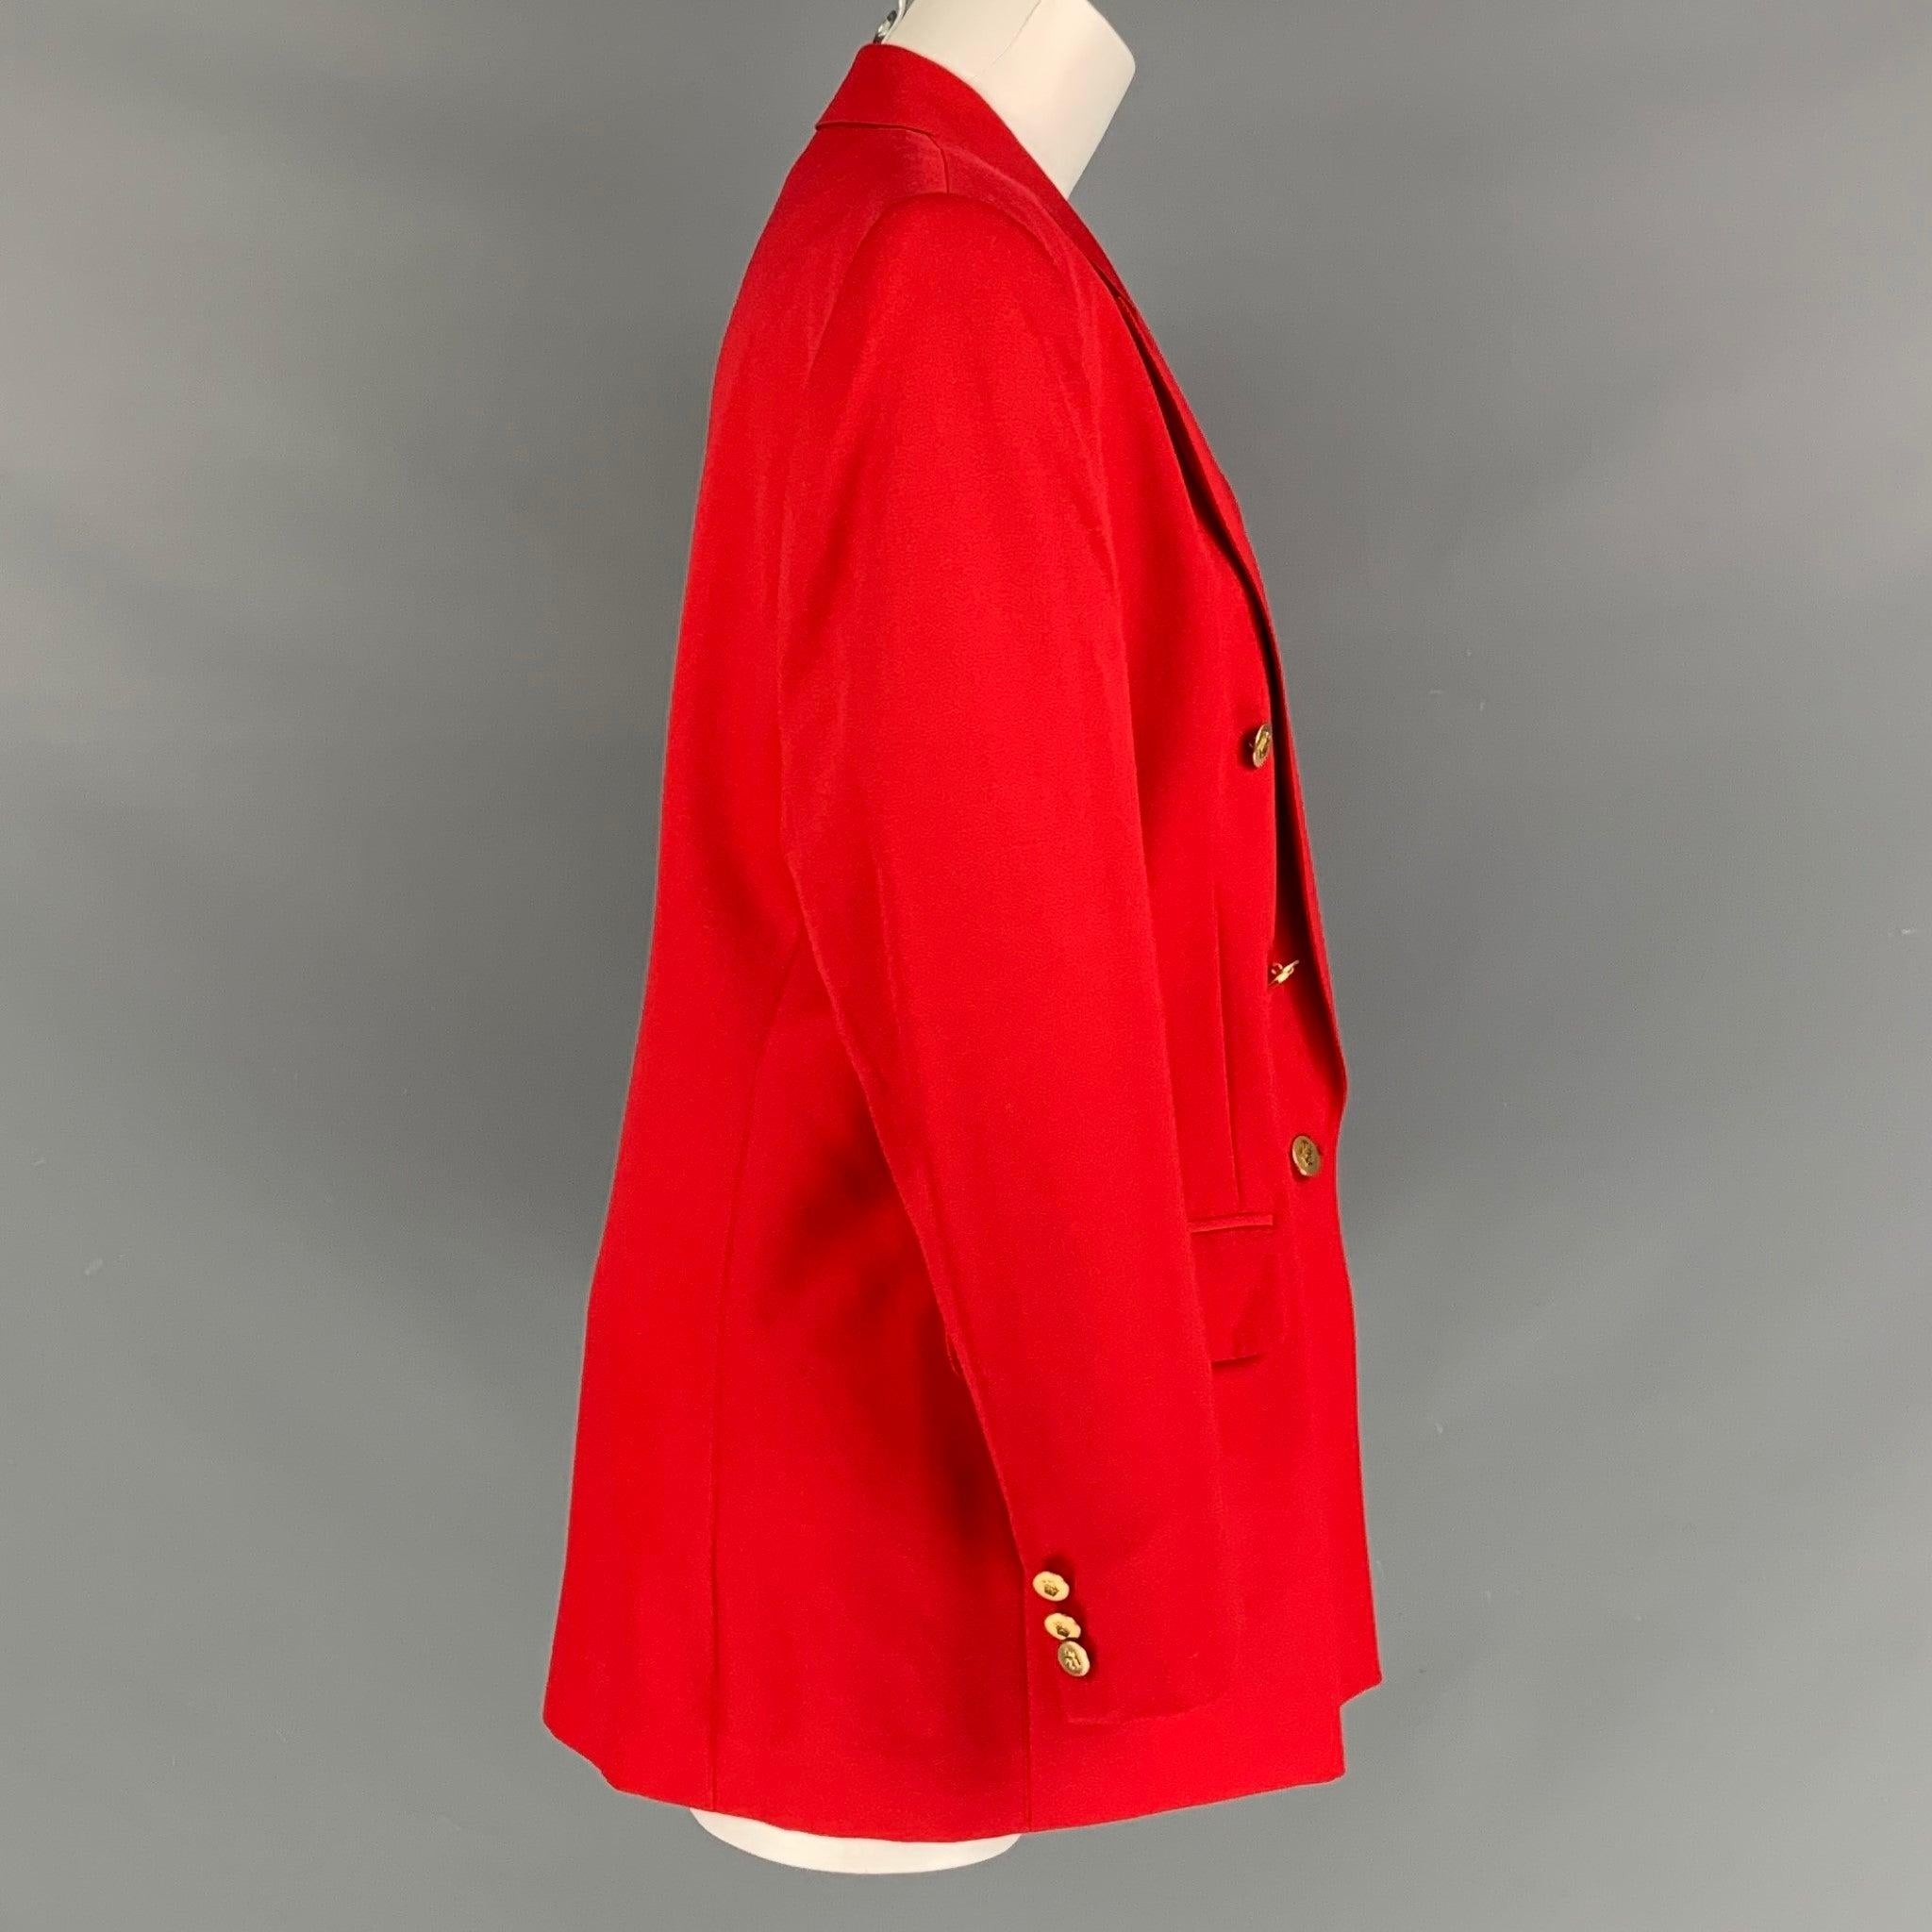 VINTAGE AQUASCUTUM blazer double boutonnage en tissu de laine rouge avec revers en pointe, poches à rabat, épaulettes et boutons à insignes dorés. Fabriqué au Canada.
Neuf avec étiquettes.  

Marqué :   12 

Mesures : 
 
Épaule : 17 pouces Poitrine